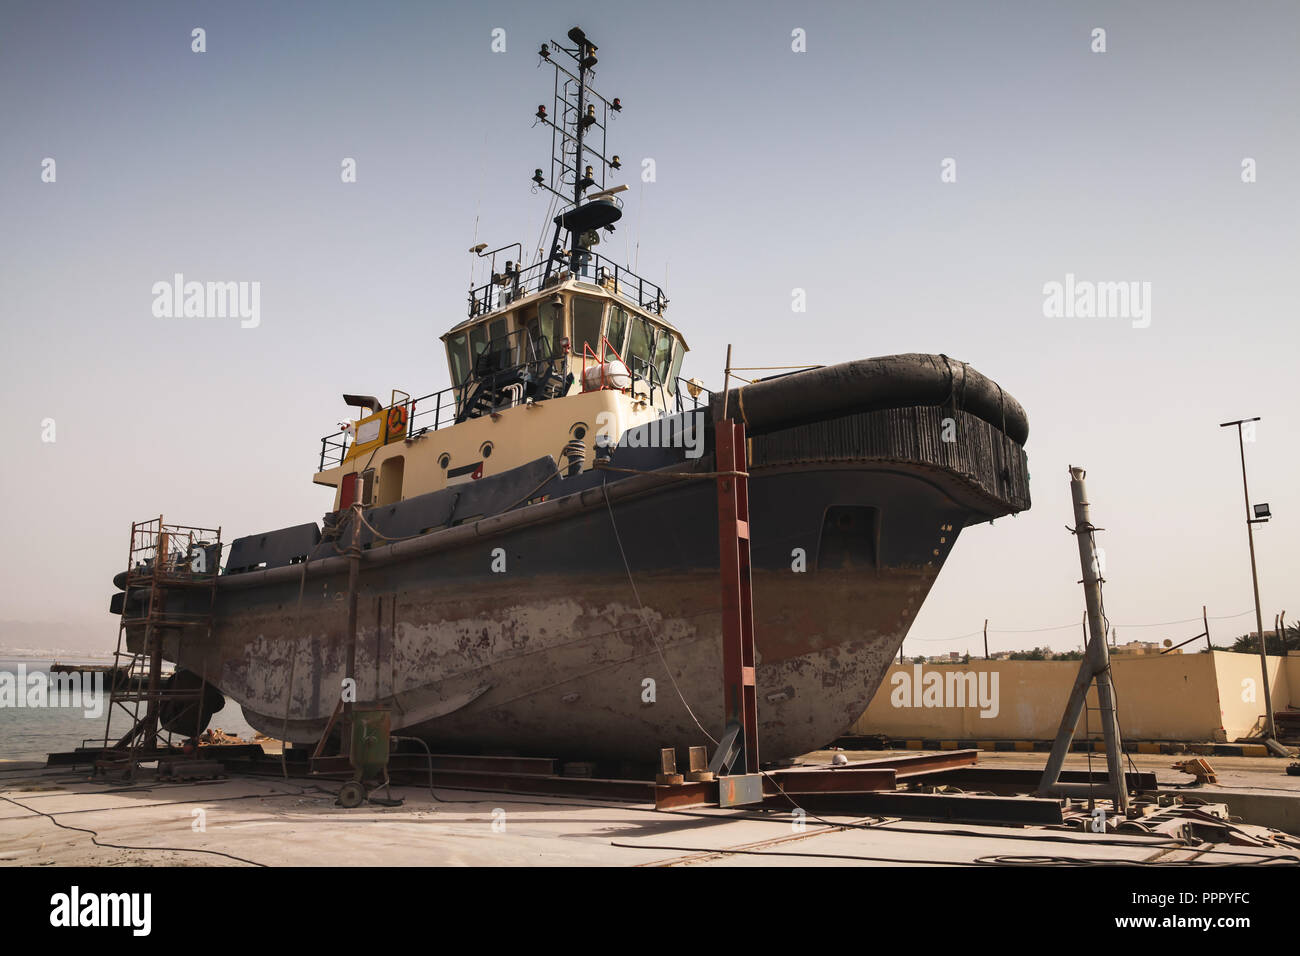 Old tugboat for repair at dock, Aqaba port, Jordan Stock Photo